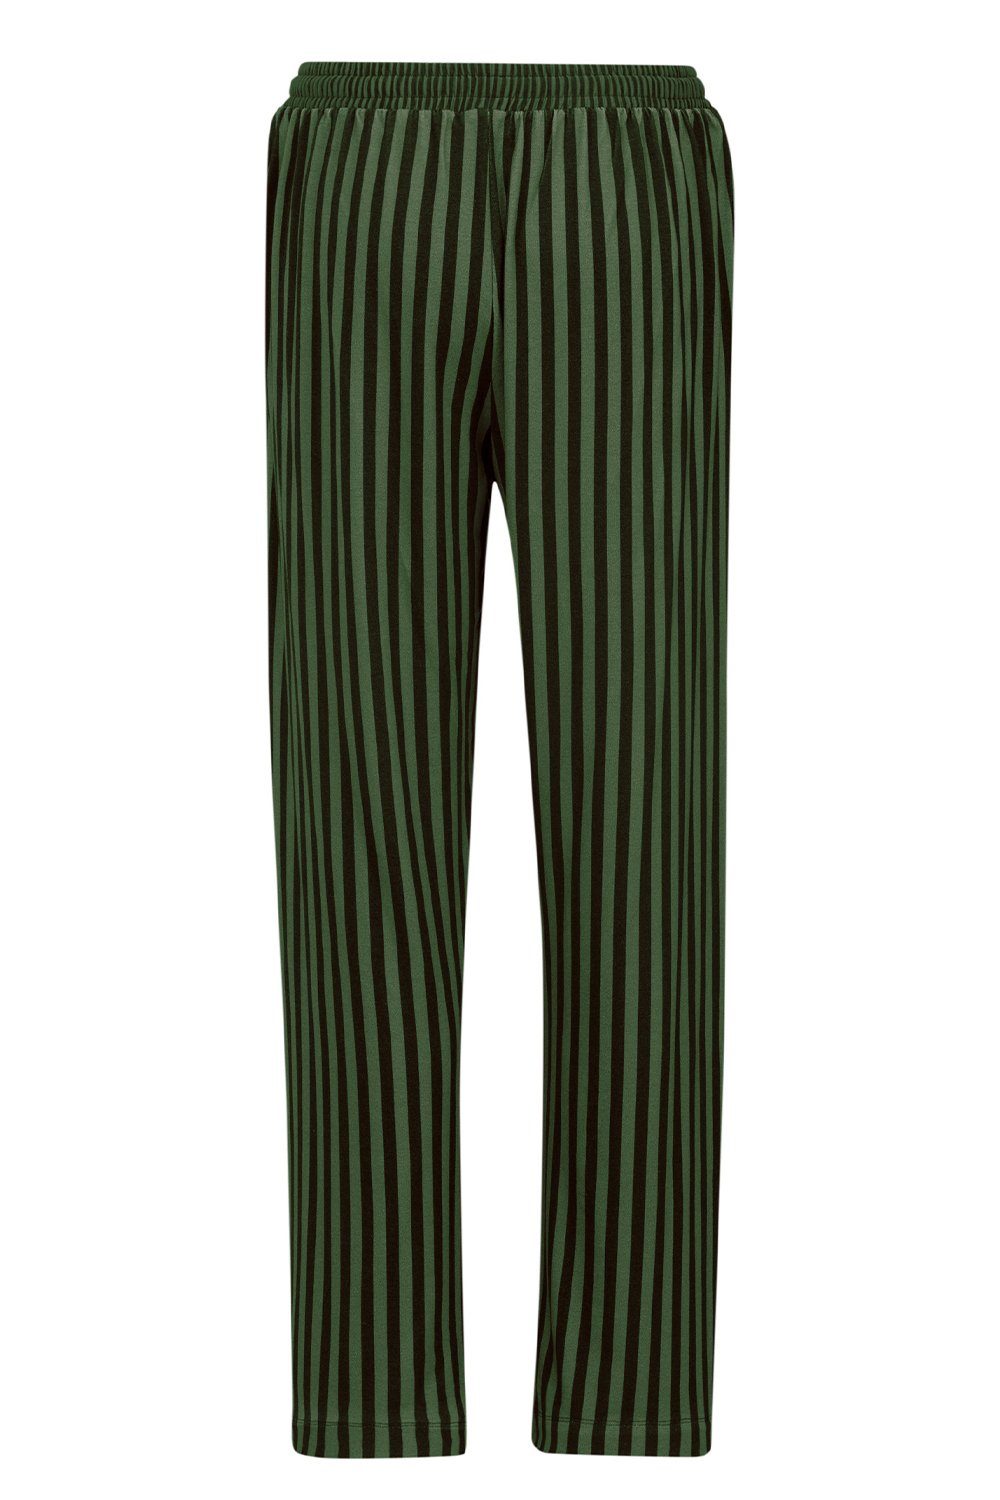 dark Studio Belin Loungehose Trousers 51500718-734 PiP green Sumo Long Stripe